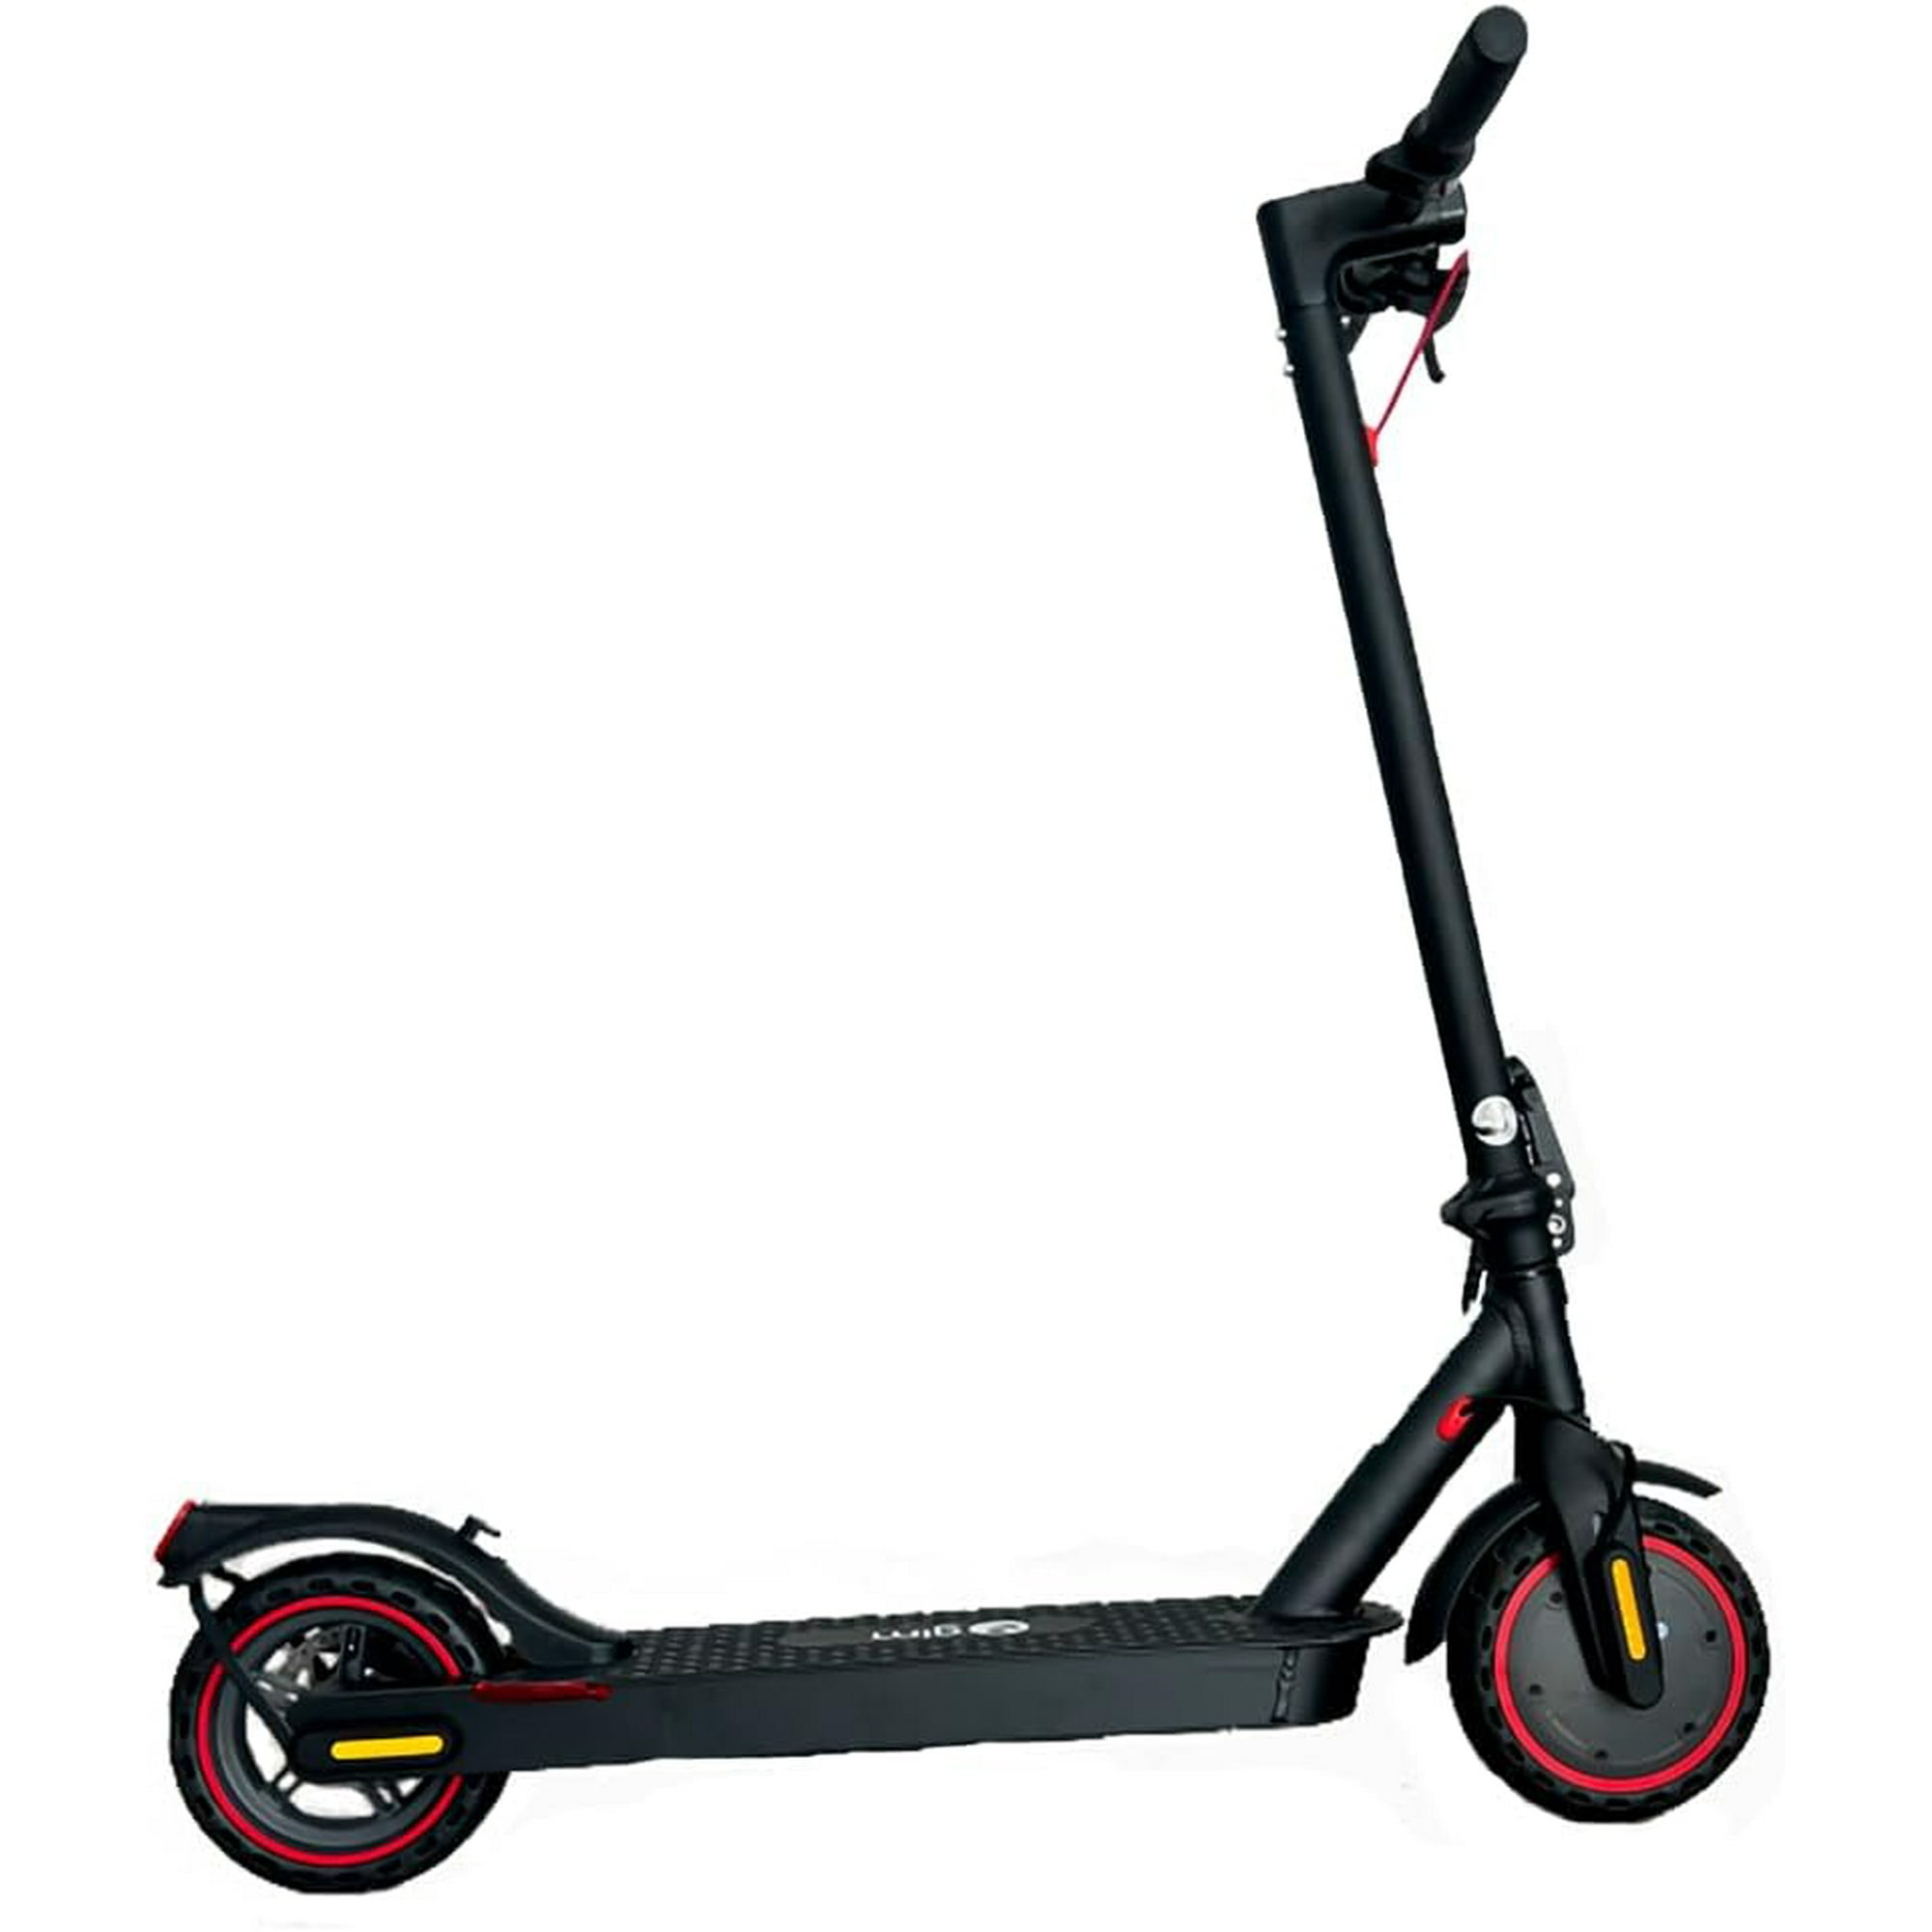 Scooter Electrico para adulto Novaride Pro - Patin electrico con